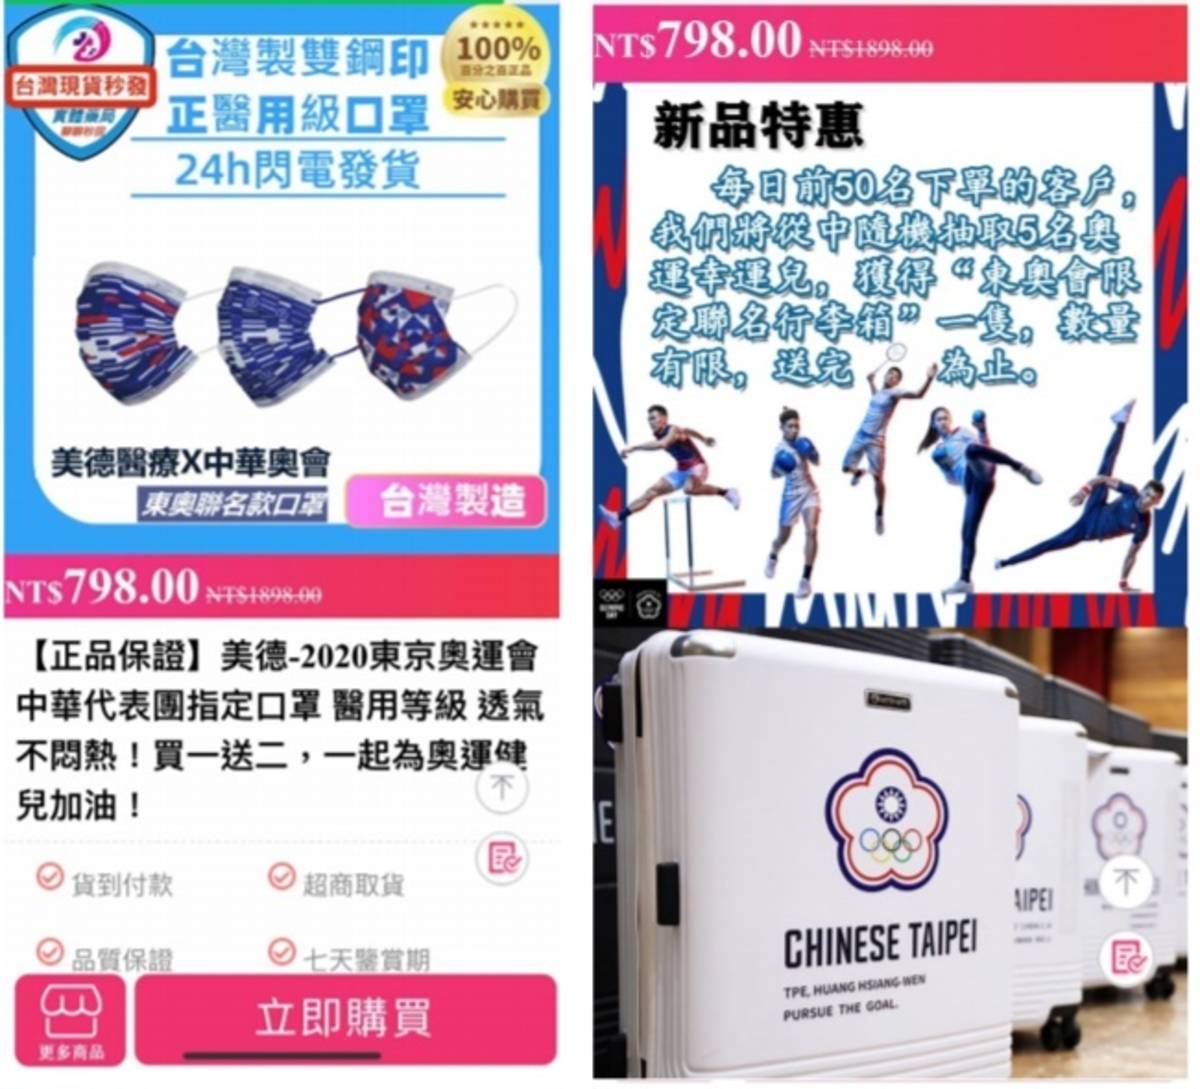 搶搭東奧熱潮，網路出現一頁式網頁販售中華奧會運動聯名款醫用口罩進行詐騙